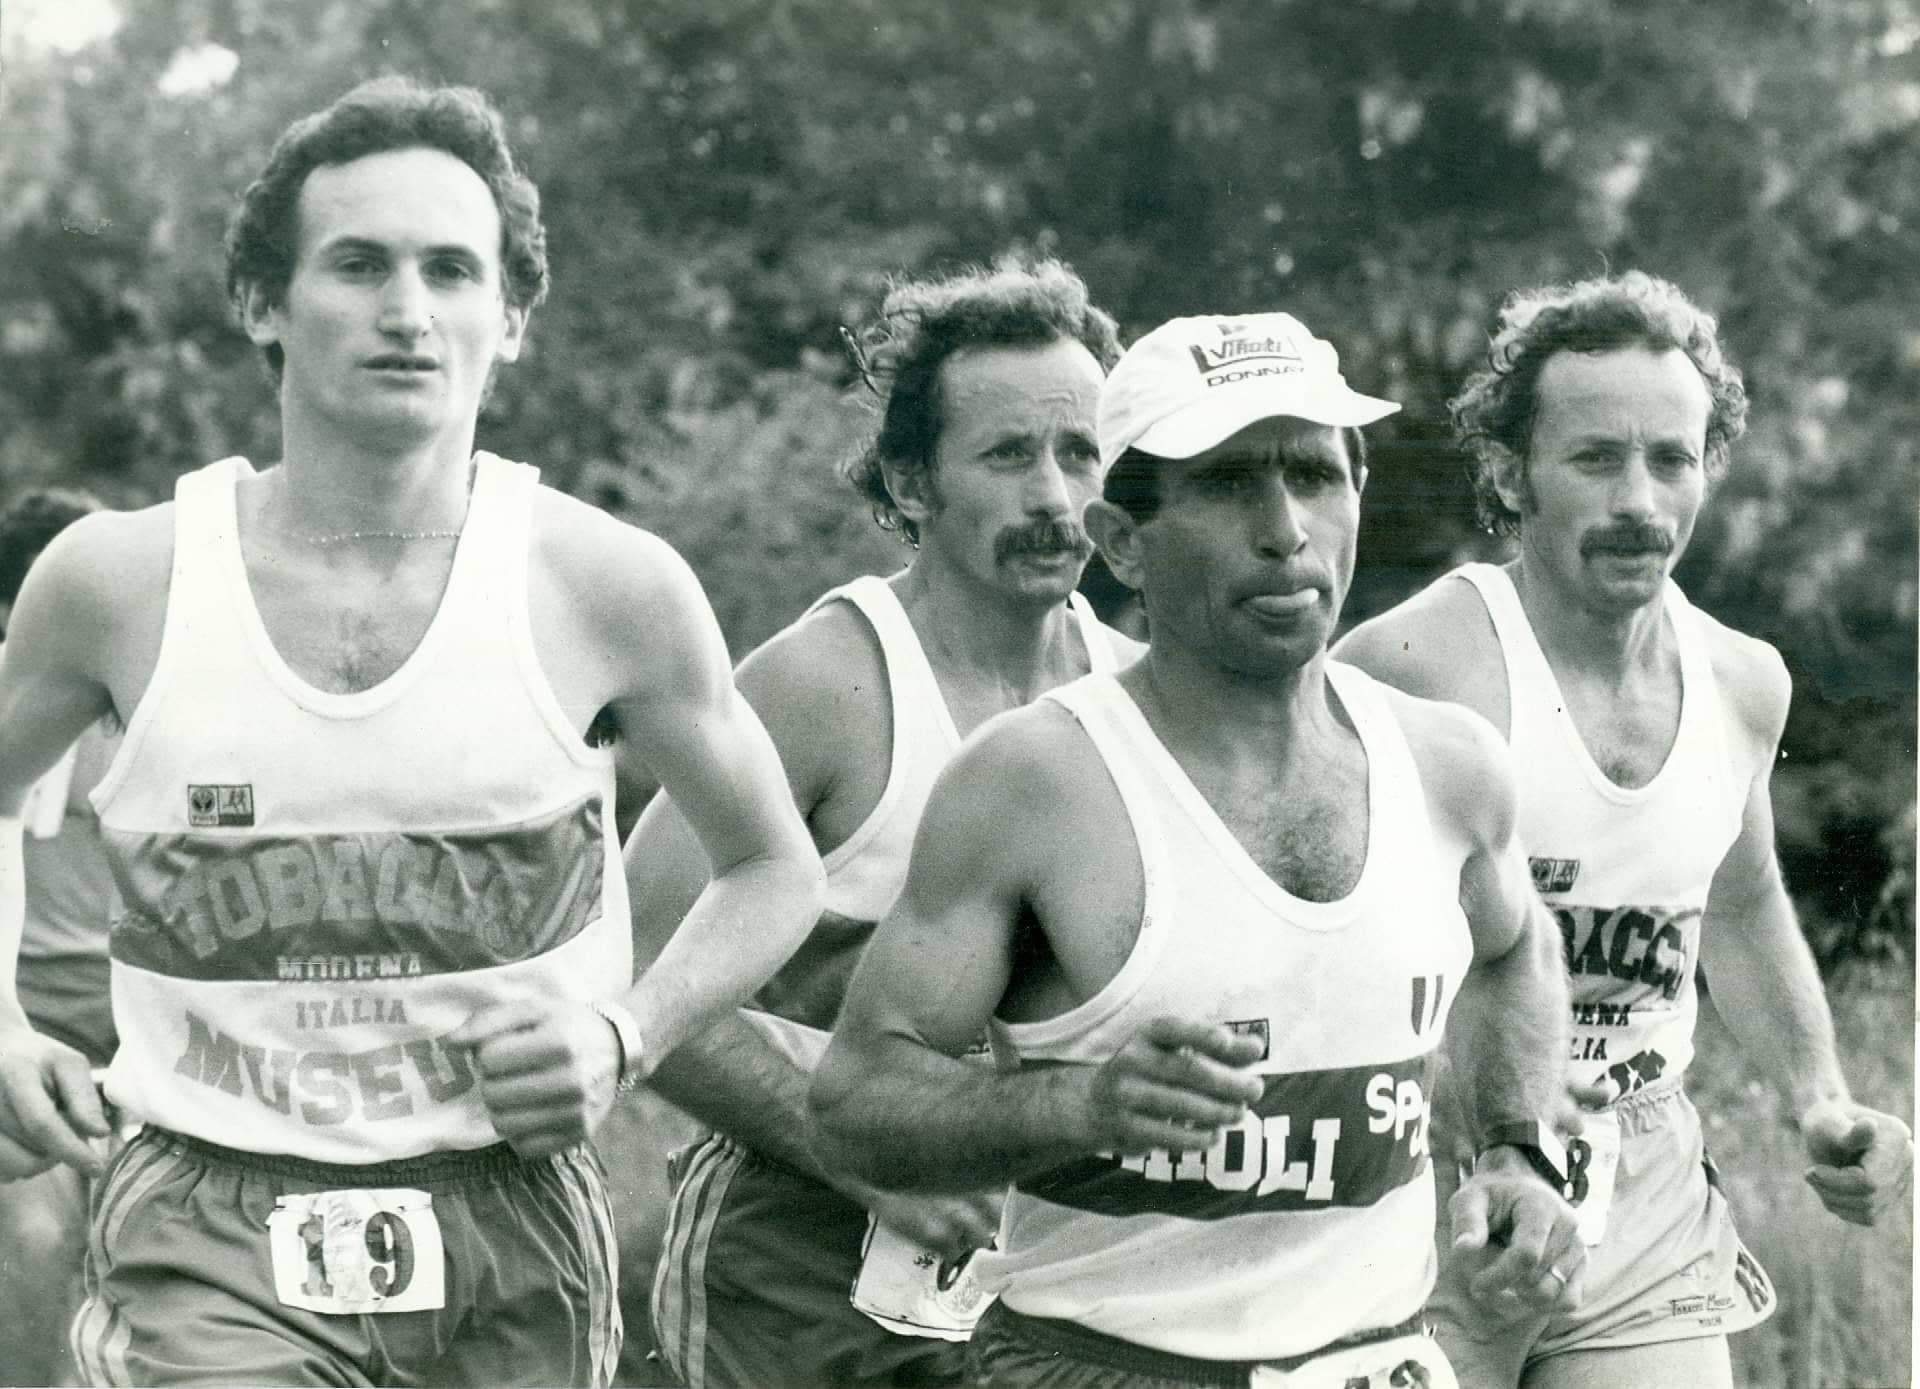 Foto 1 - Pietro Gennari: Seguendo le orme dei fratelli cominciai con la mia prima maratona 